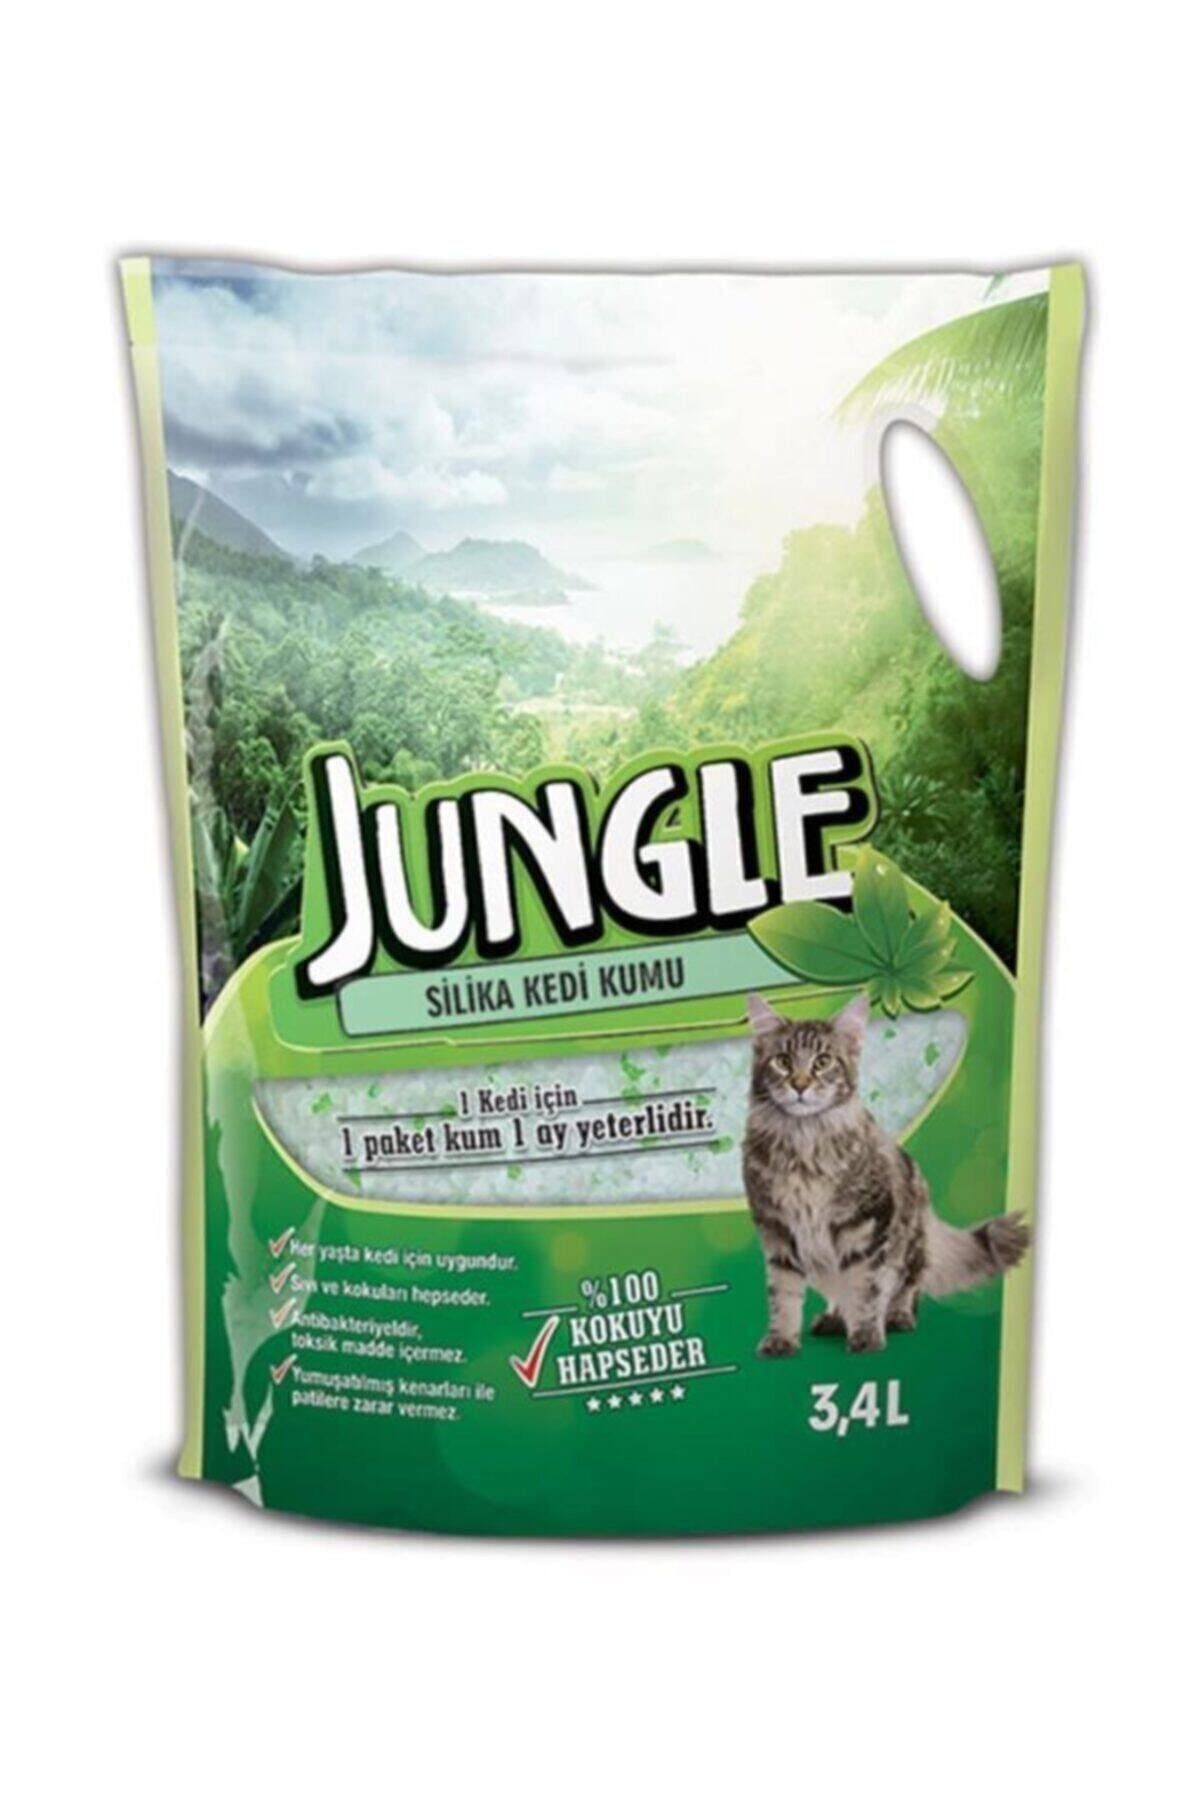 Jungle Sılıca Kedi Kumu 3,4 Lt *9